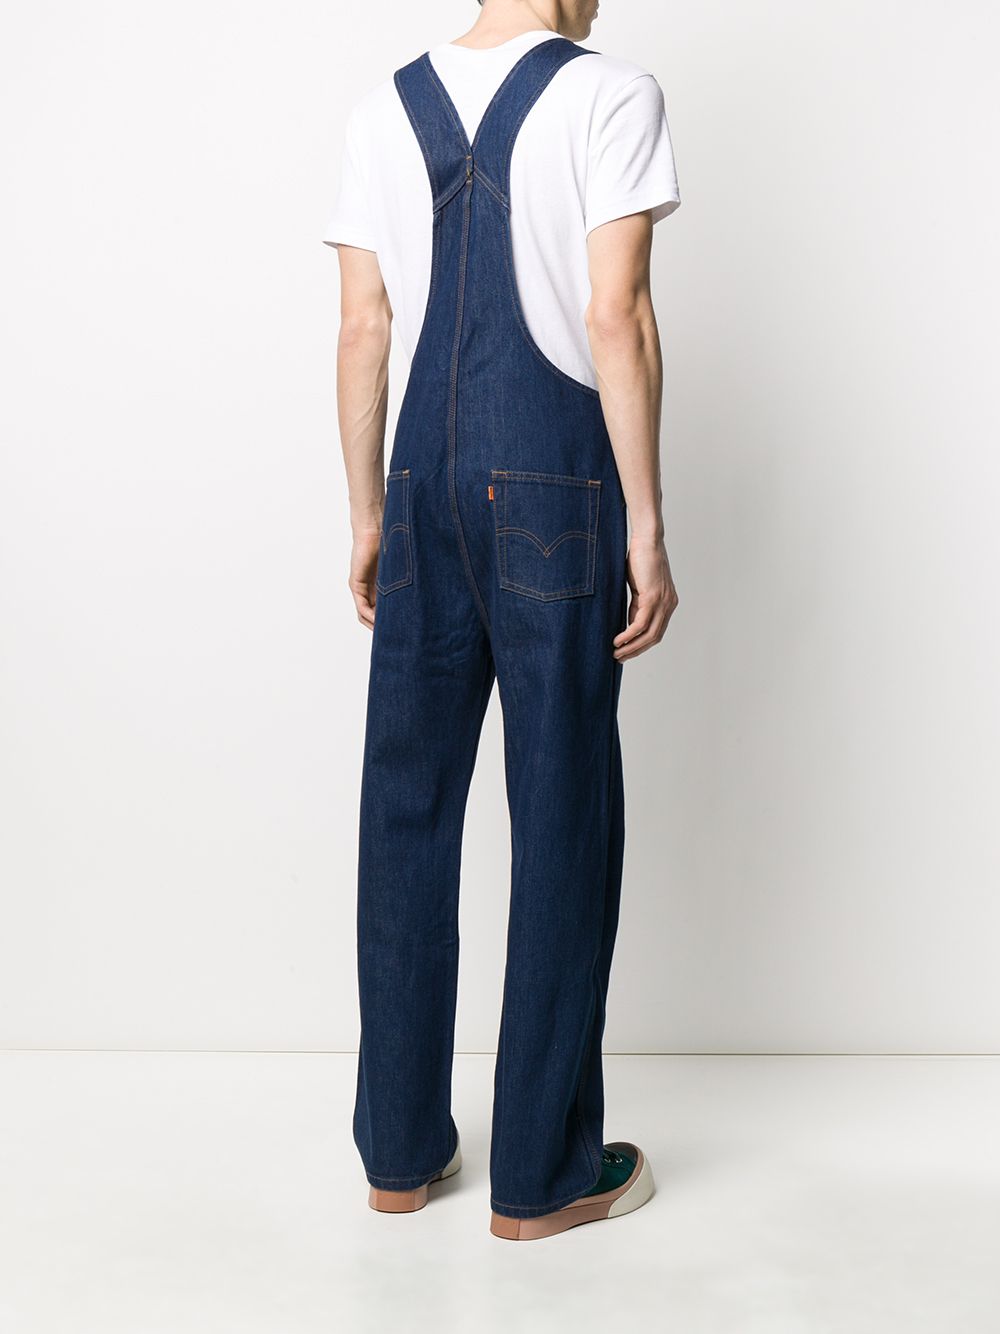 фото Levi's vintage clothing джинсовый комбинезон прямого кроя